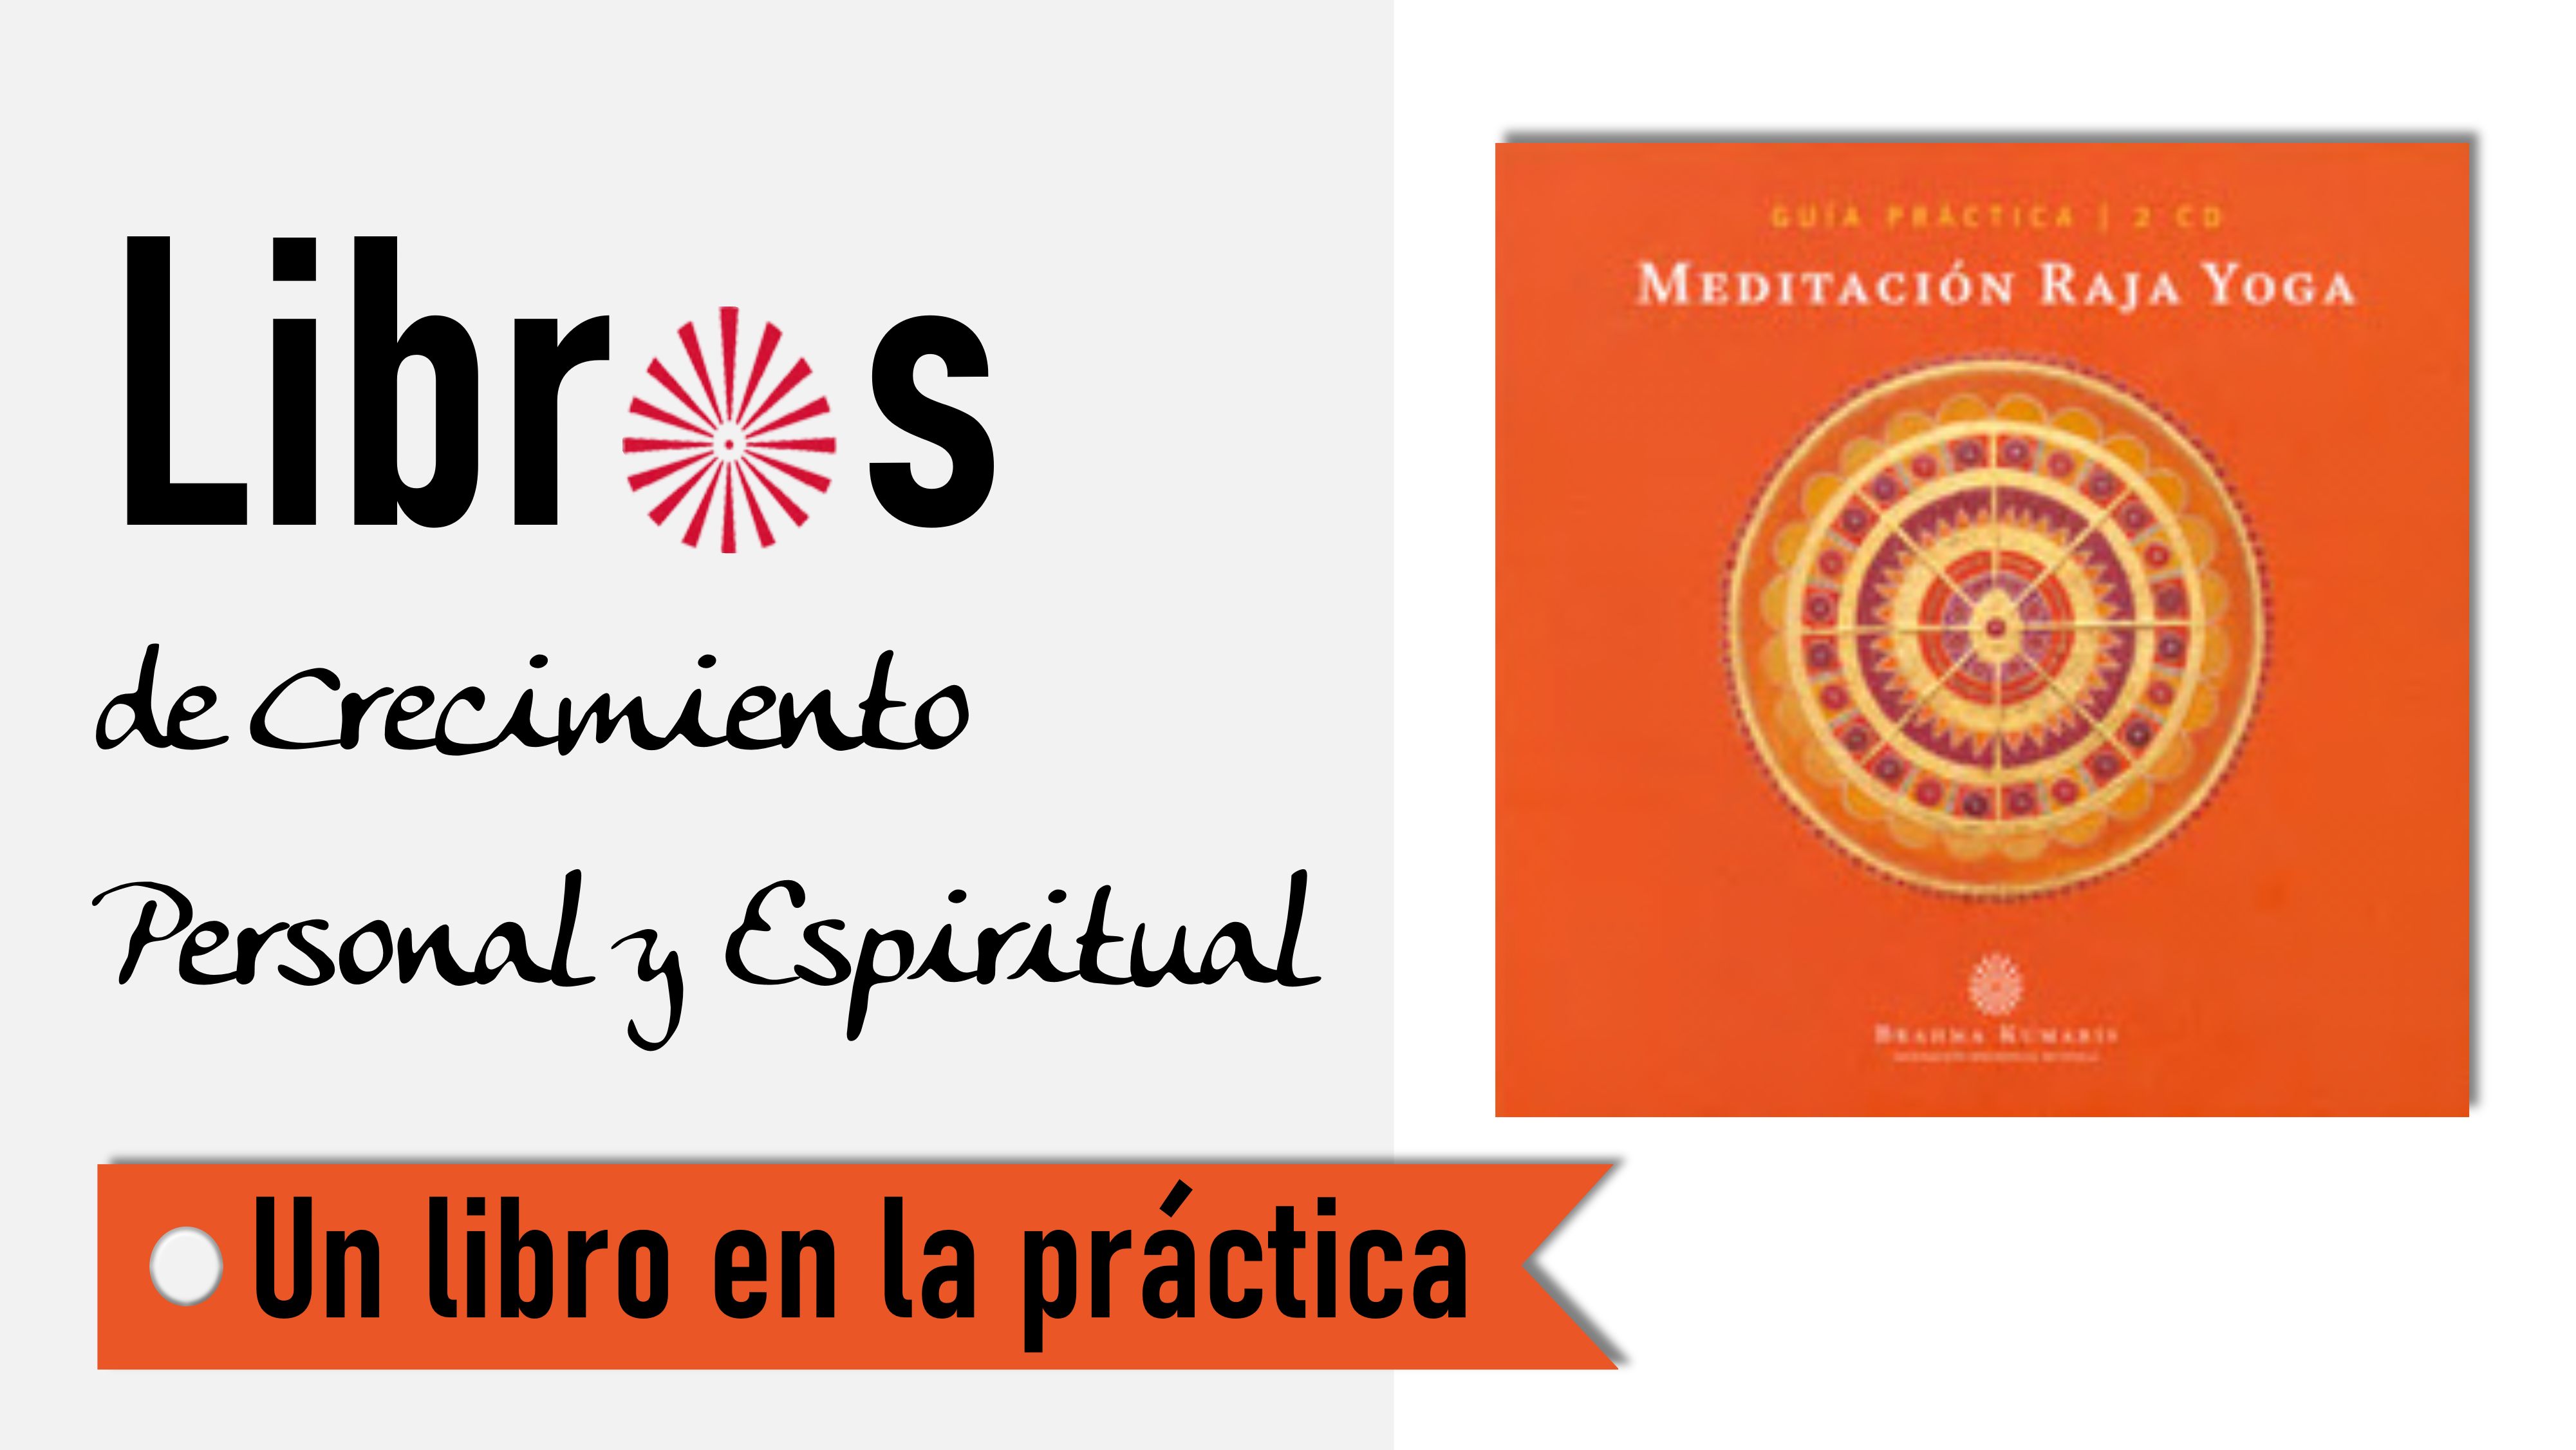 Un libro en la práctica: Guía práctica de Meditación Raja Yoga (6 Octubre 2020) On-line desde Barcelona